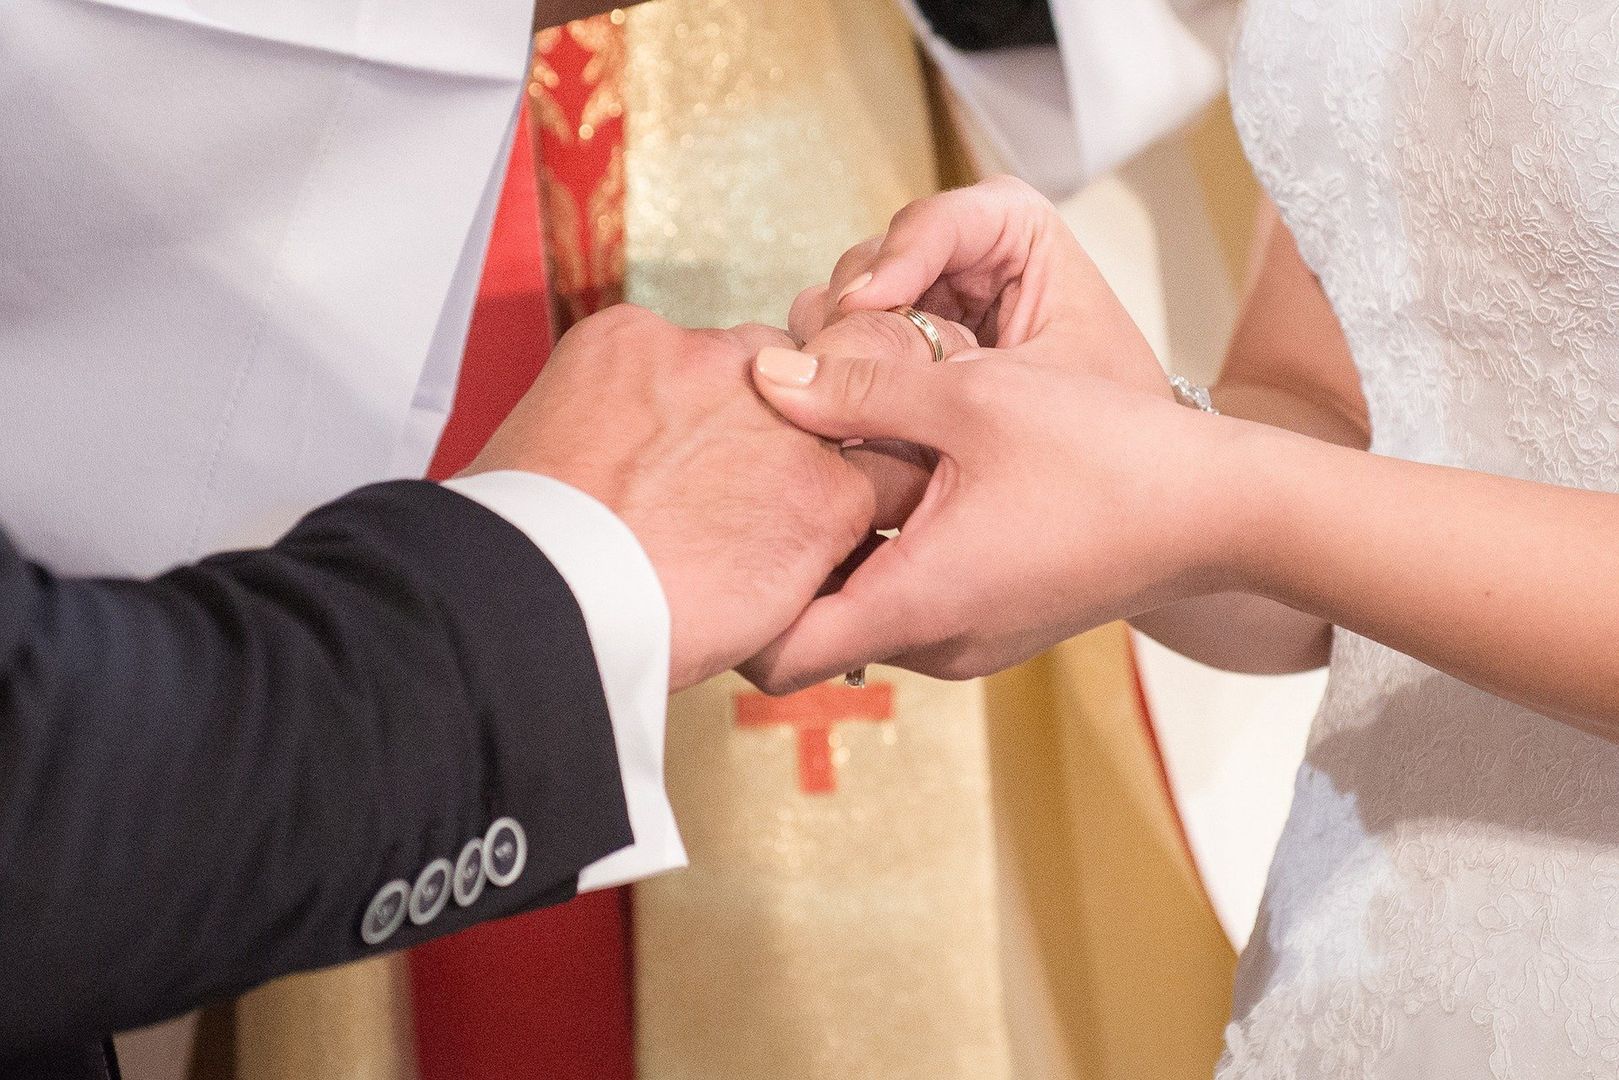 Szykujesz się do kościelnego ślubu? Możesz mieć spory problem